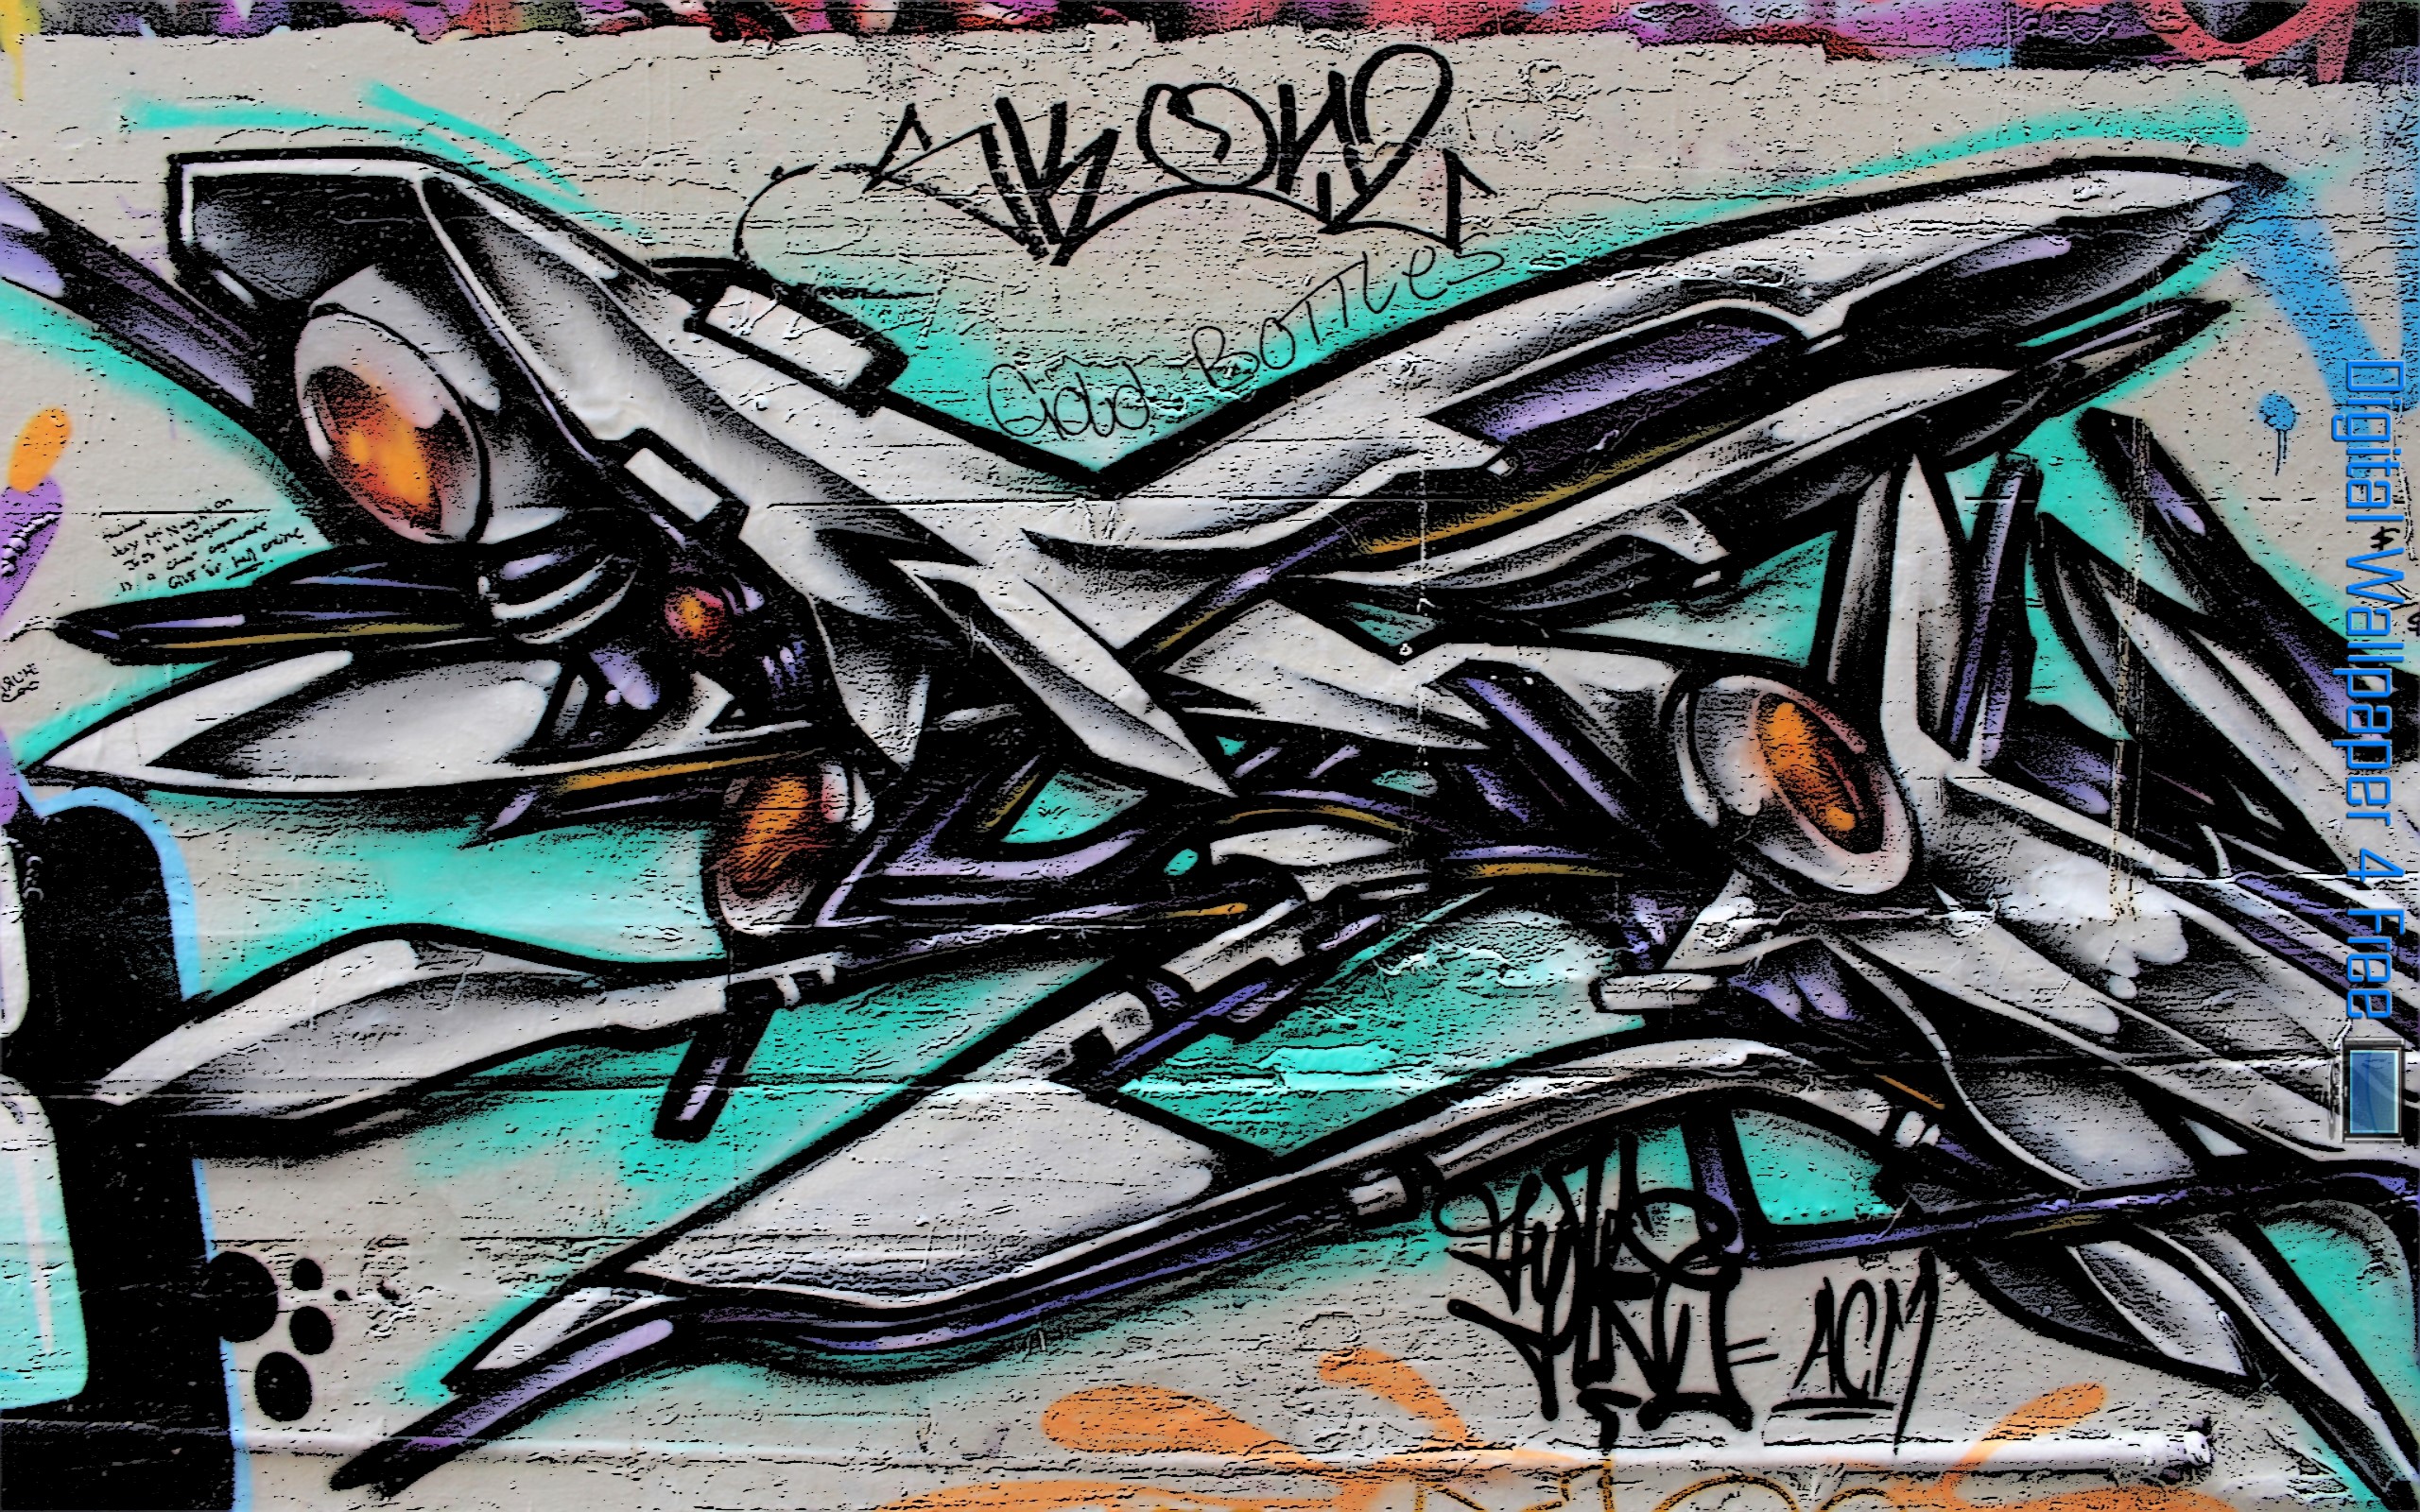 Graffiti - HD Wallpaper 